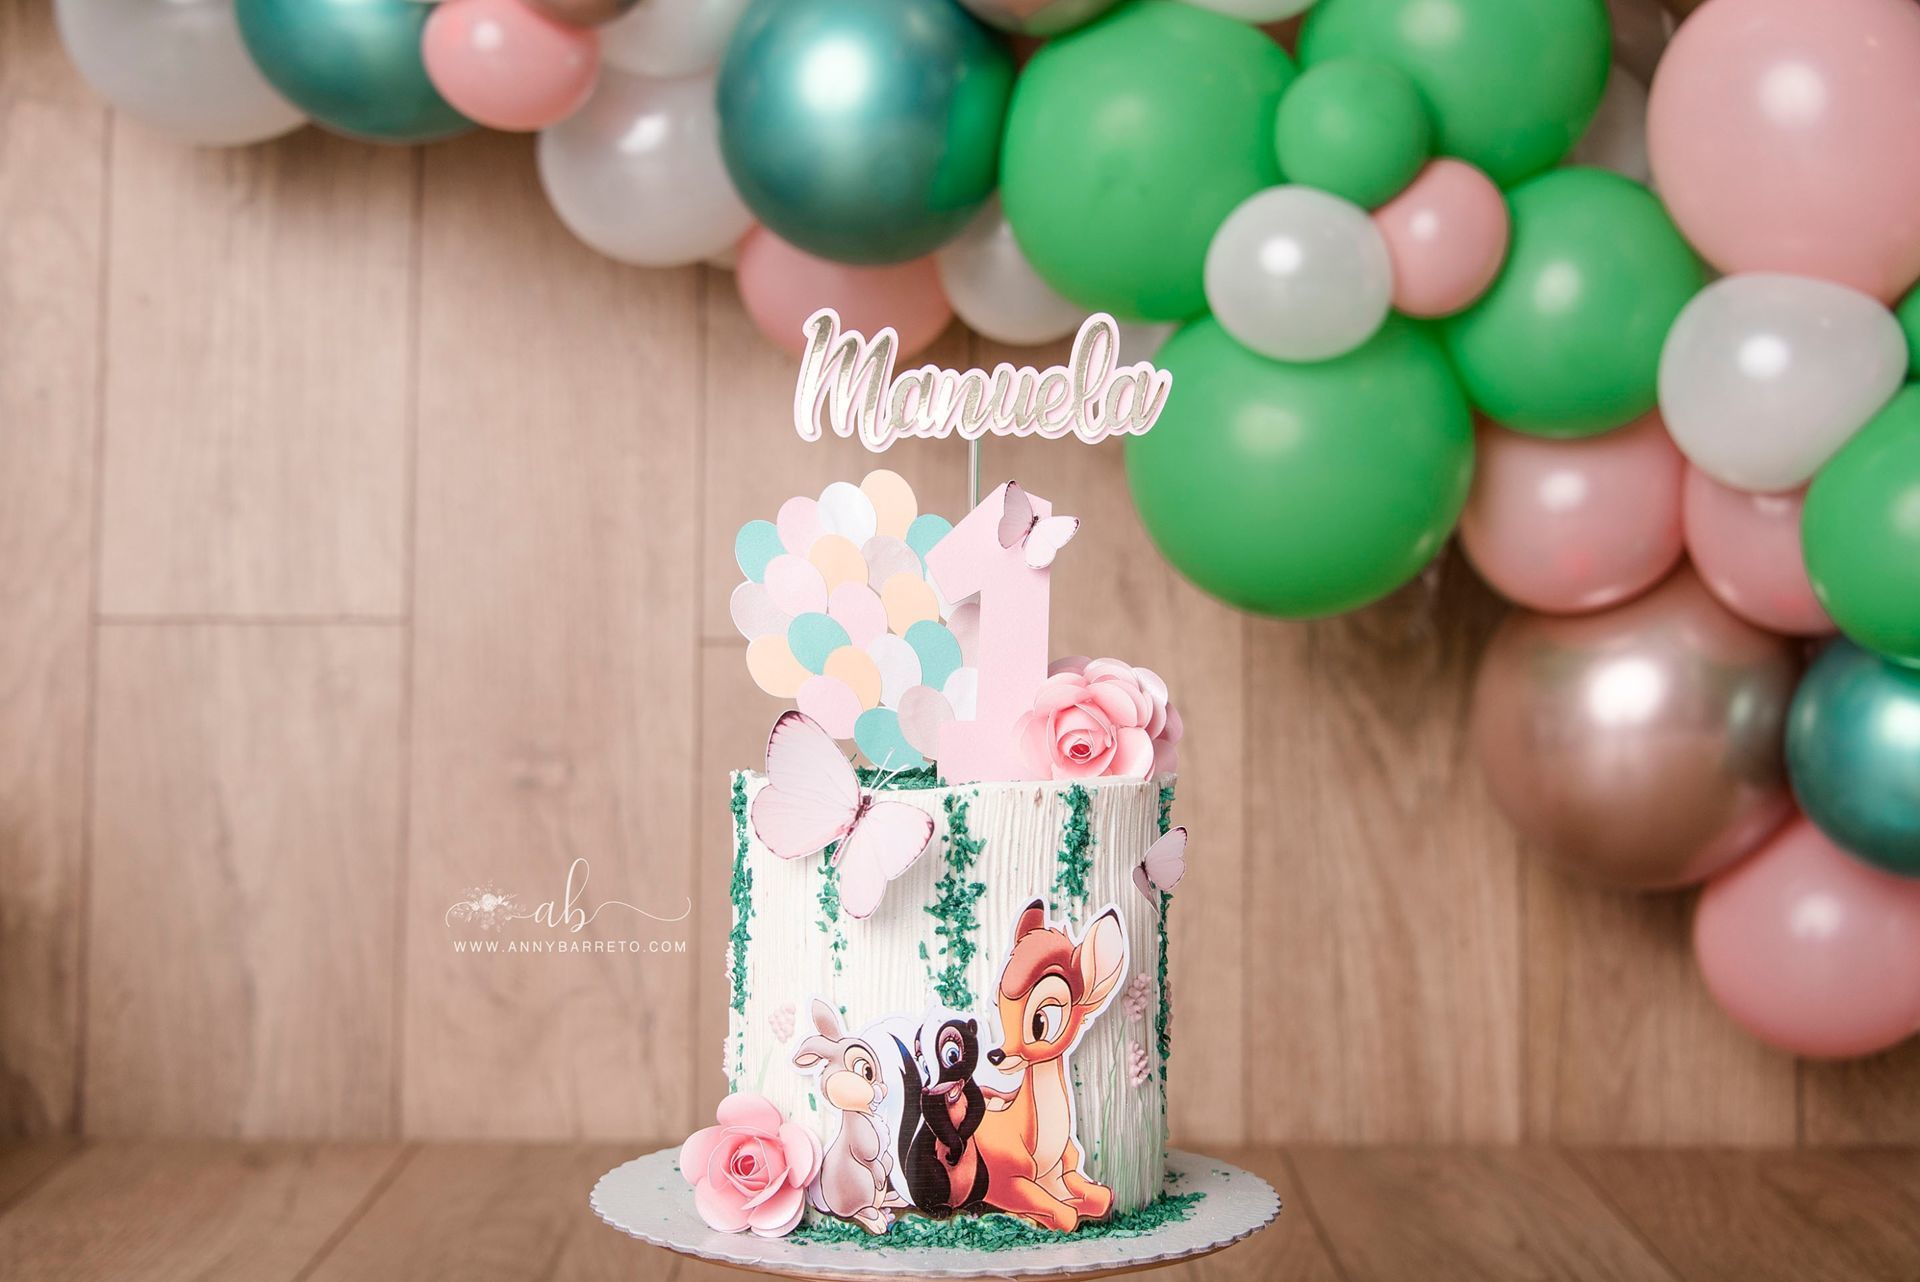 Manuela | Cake Smash